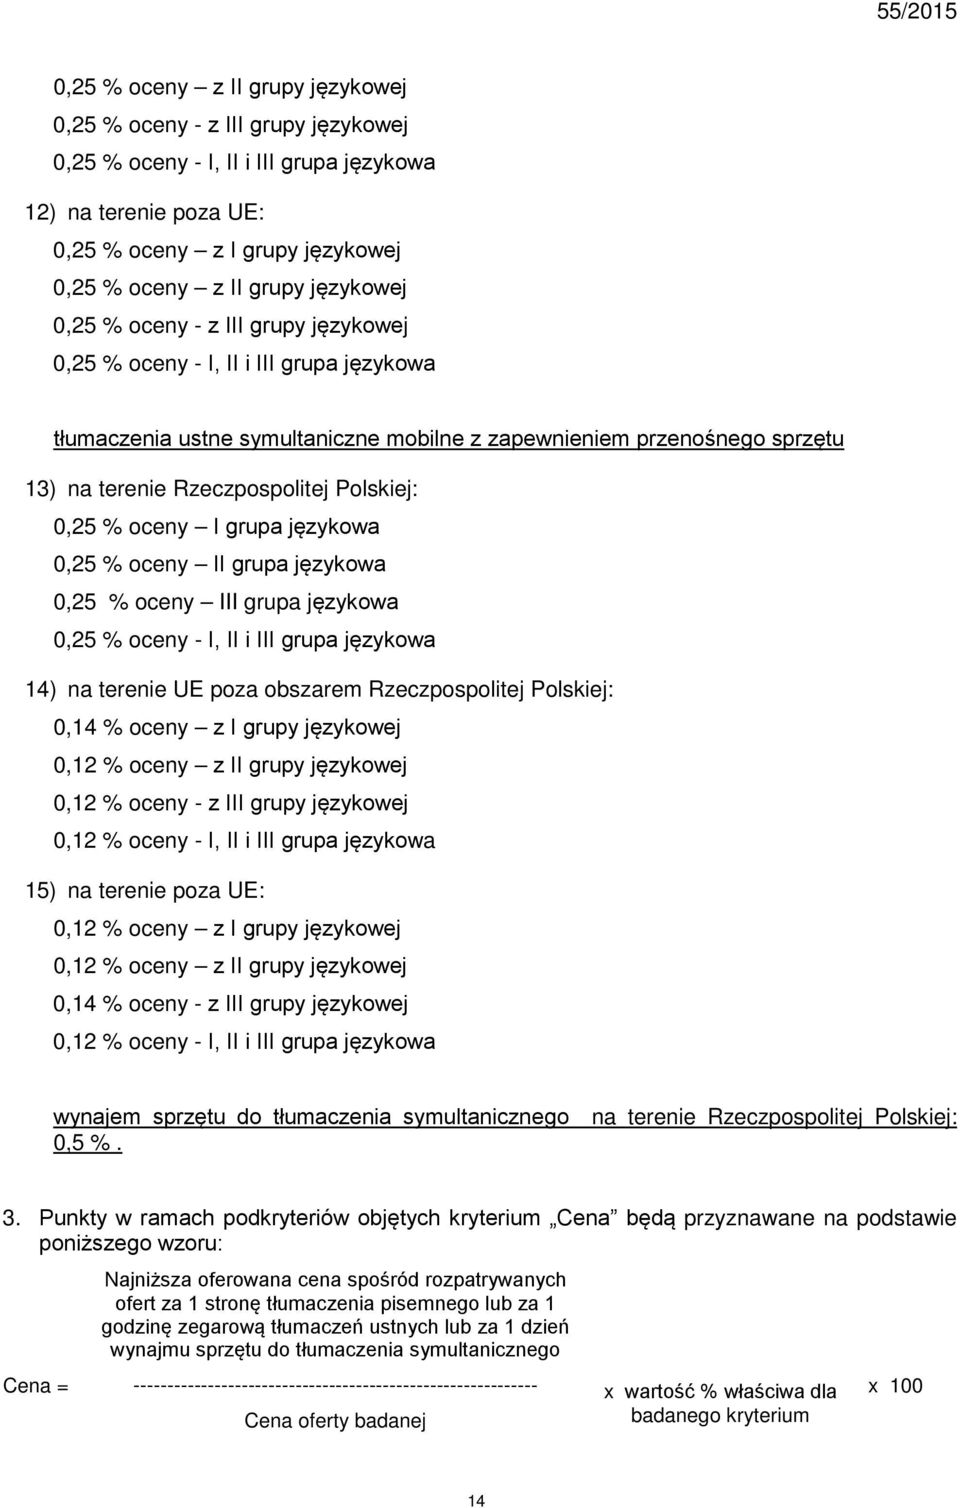 Polskiej: 0,25 % oceny I grupa językowa 0,25 % oceny II grupa językowa 0,25 % oceny III grupa językowa 0,25 % oceny - I, II i III grupa językowa 14) na terenie UE poza obszarem Rzeczpospolitej